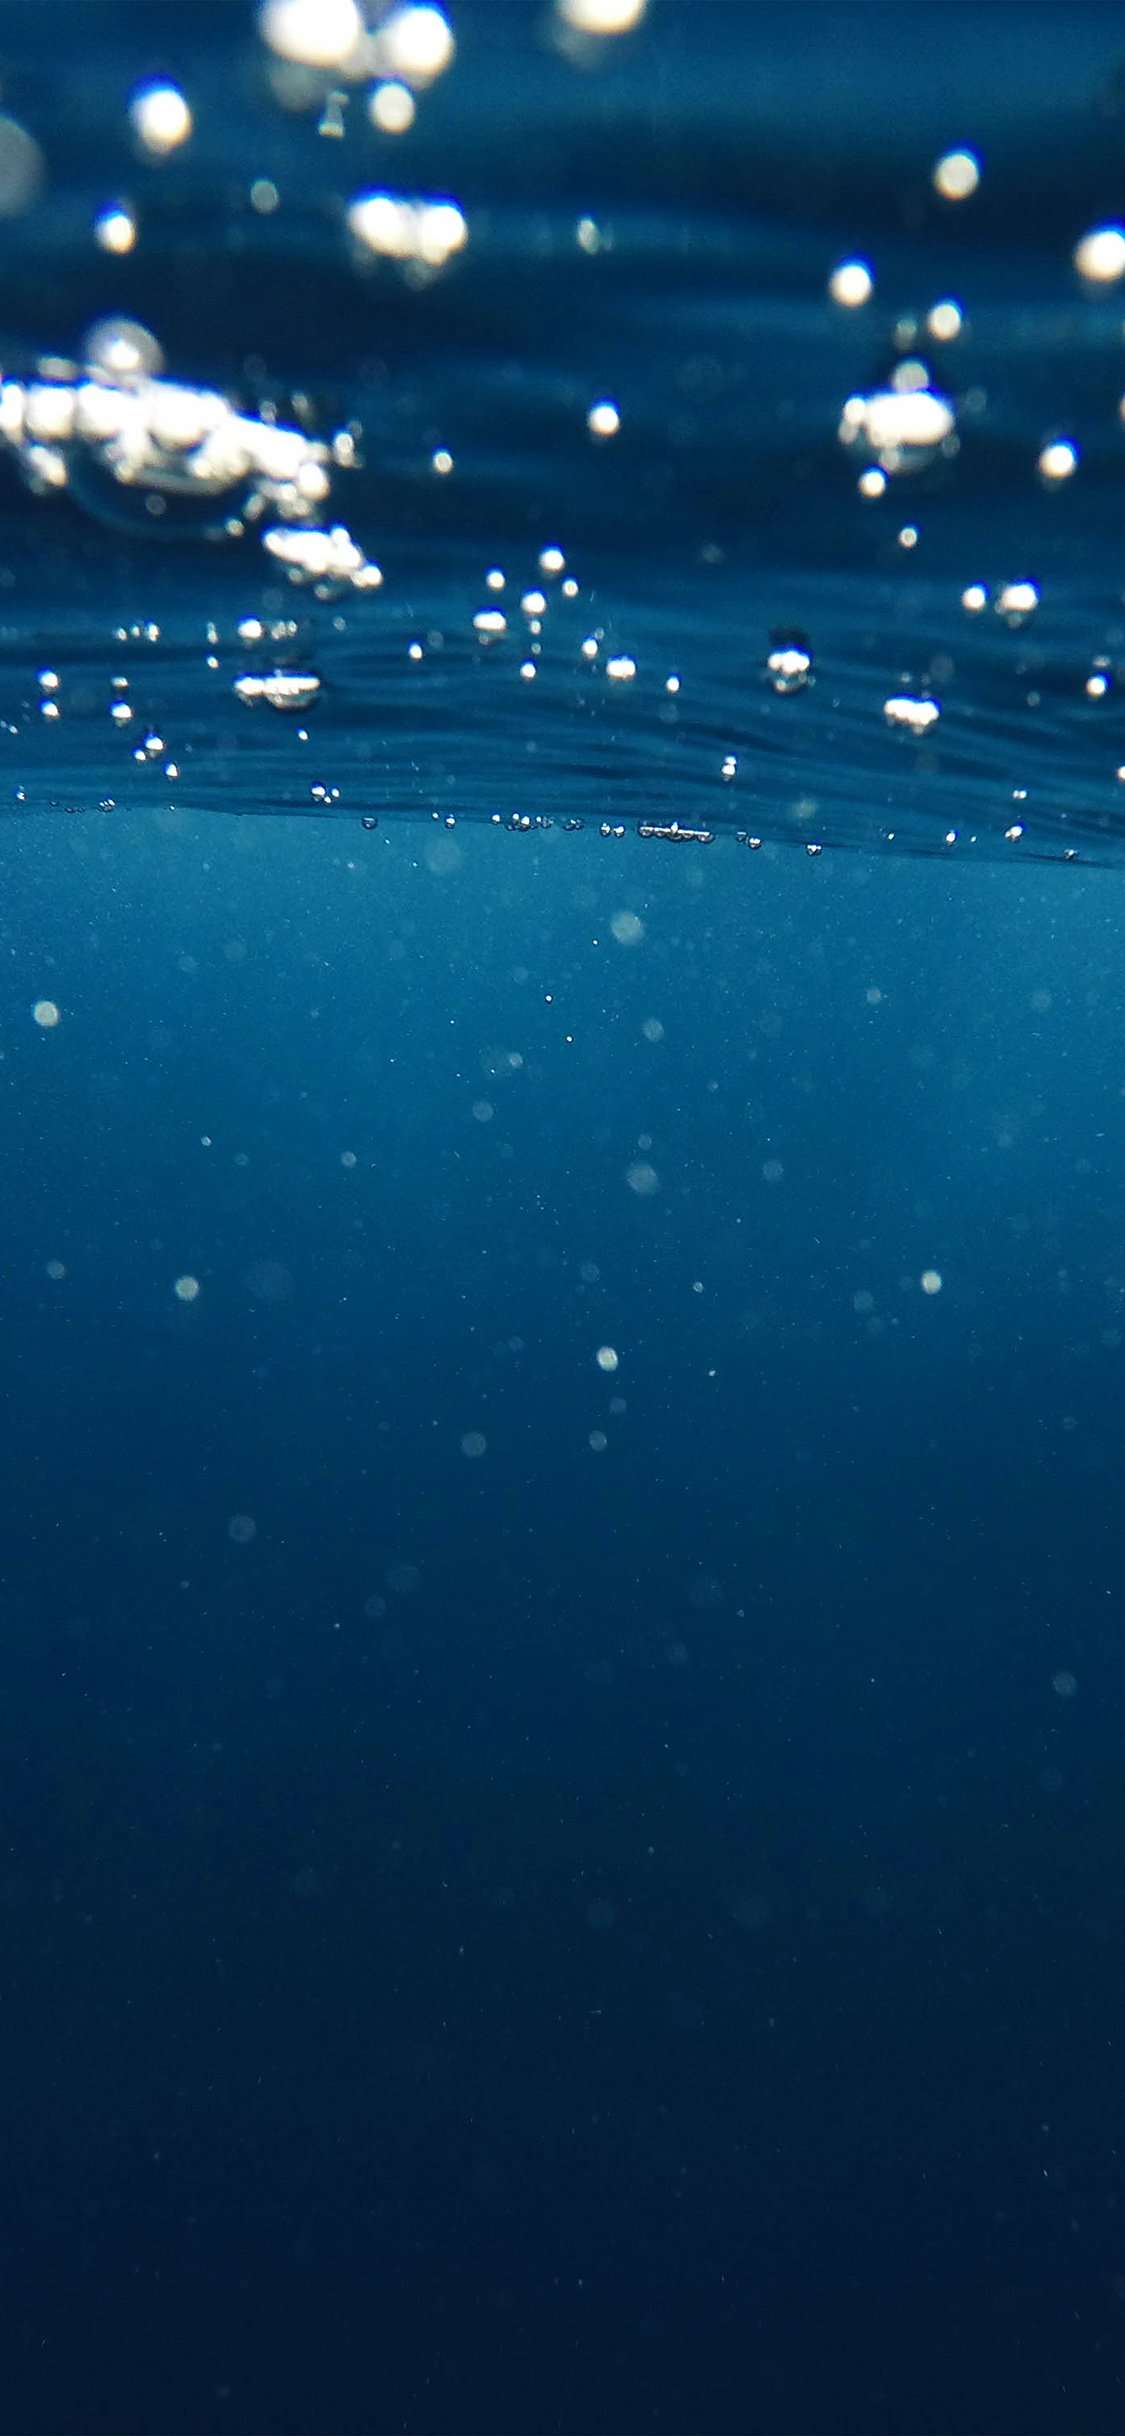 iPhone X Wallpaper Underwater